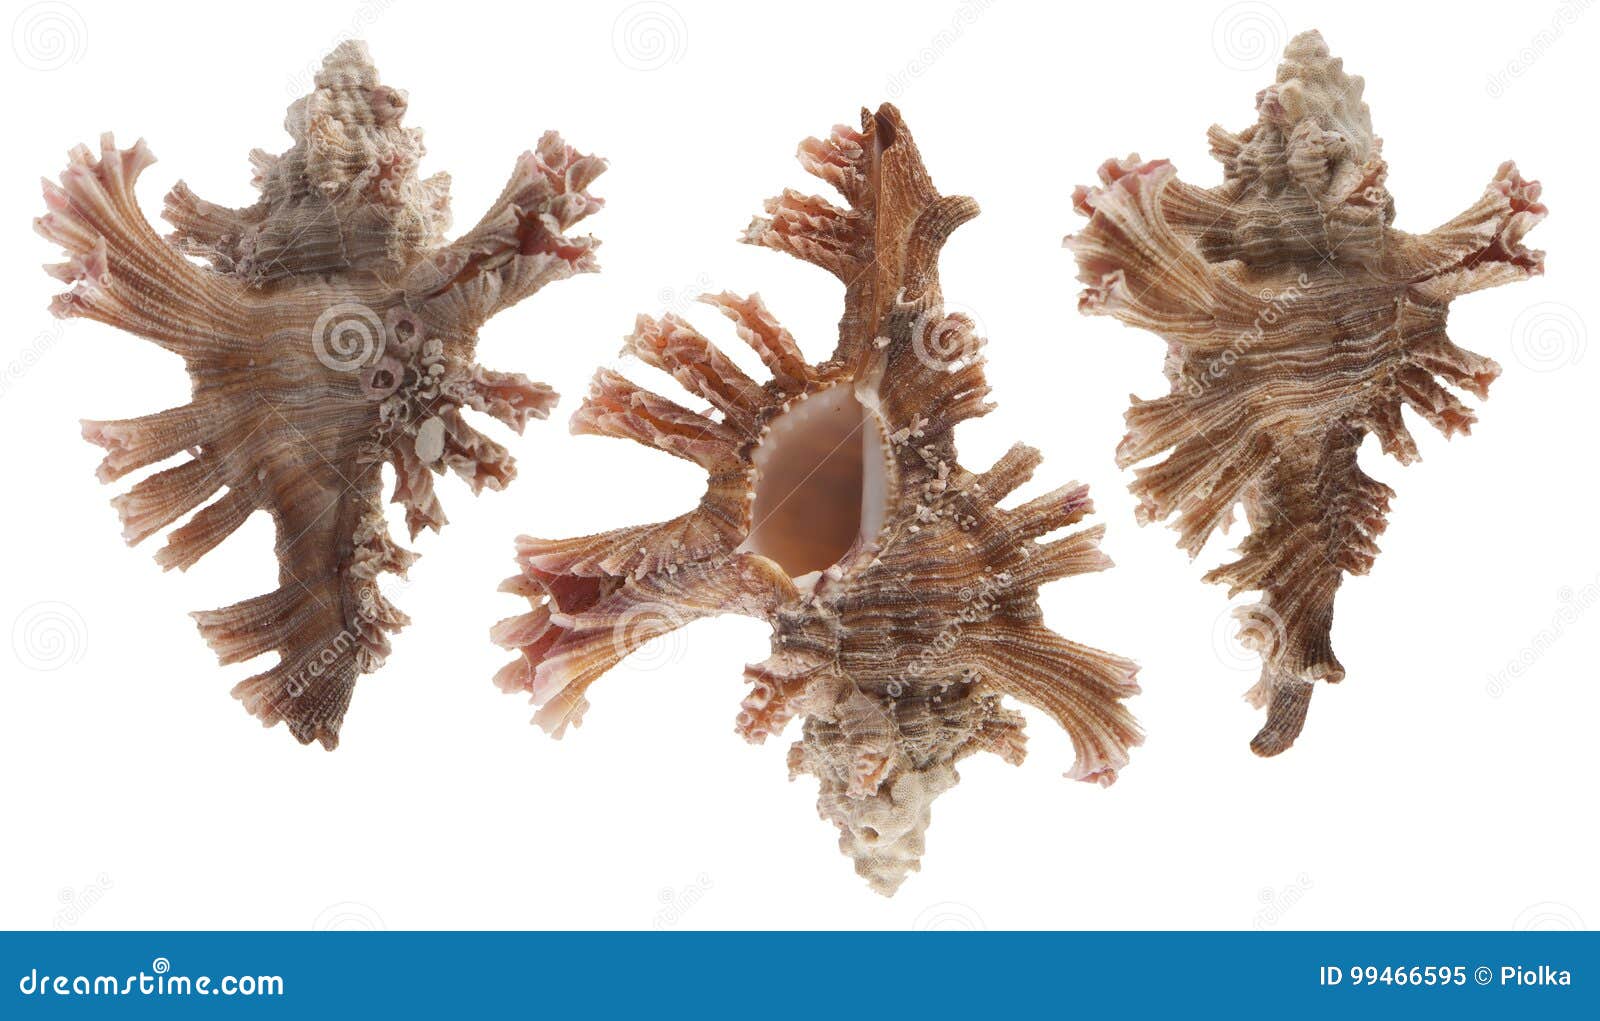 murex sea shell 